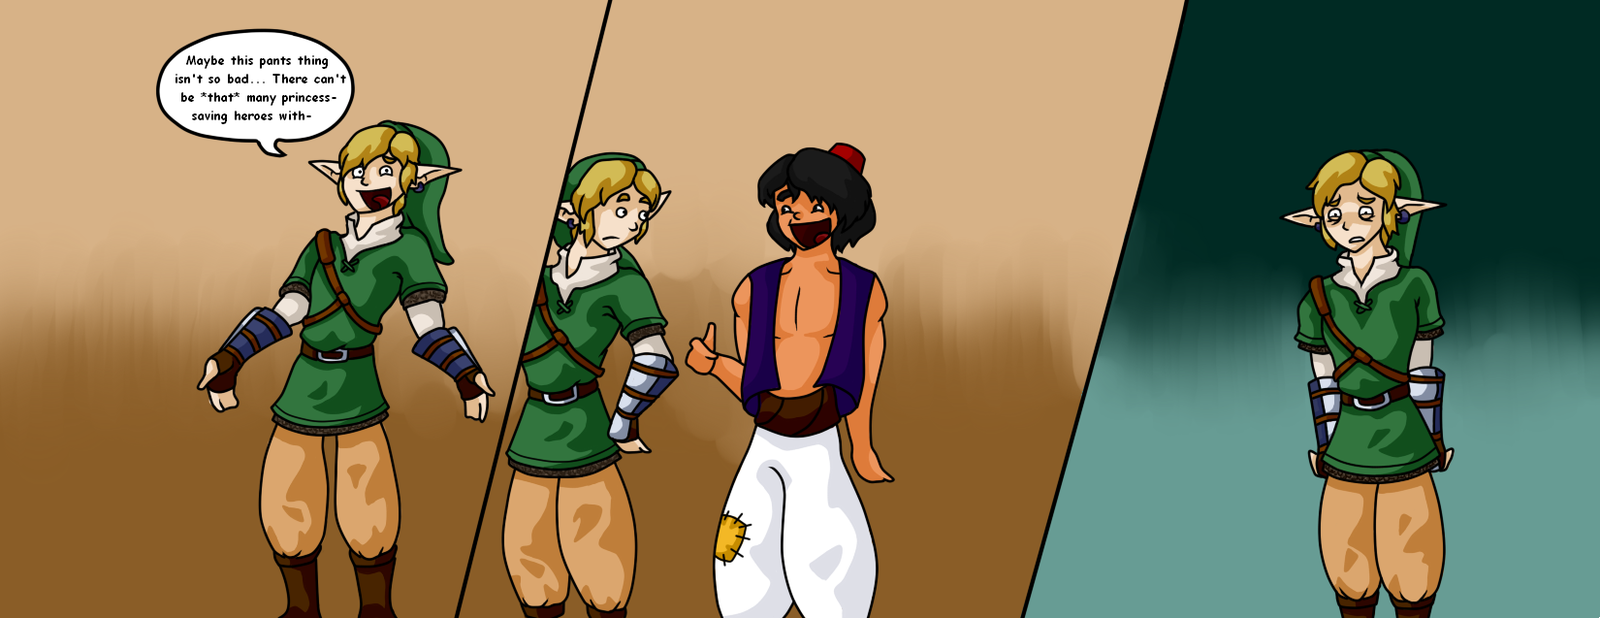 ang alamat ng zelda Photo: Link and Aladdin joke.